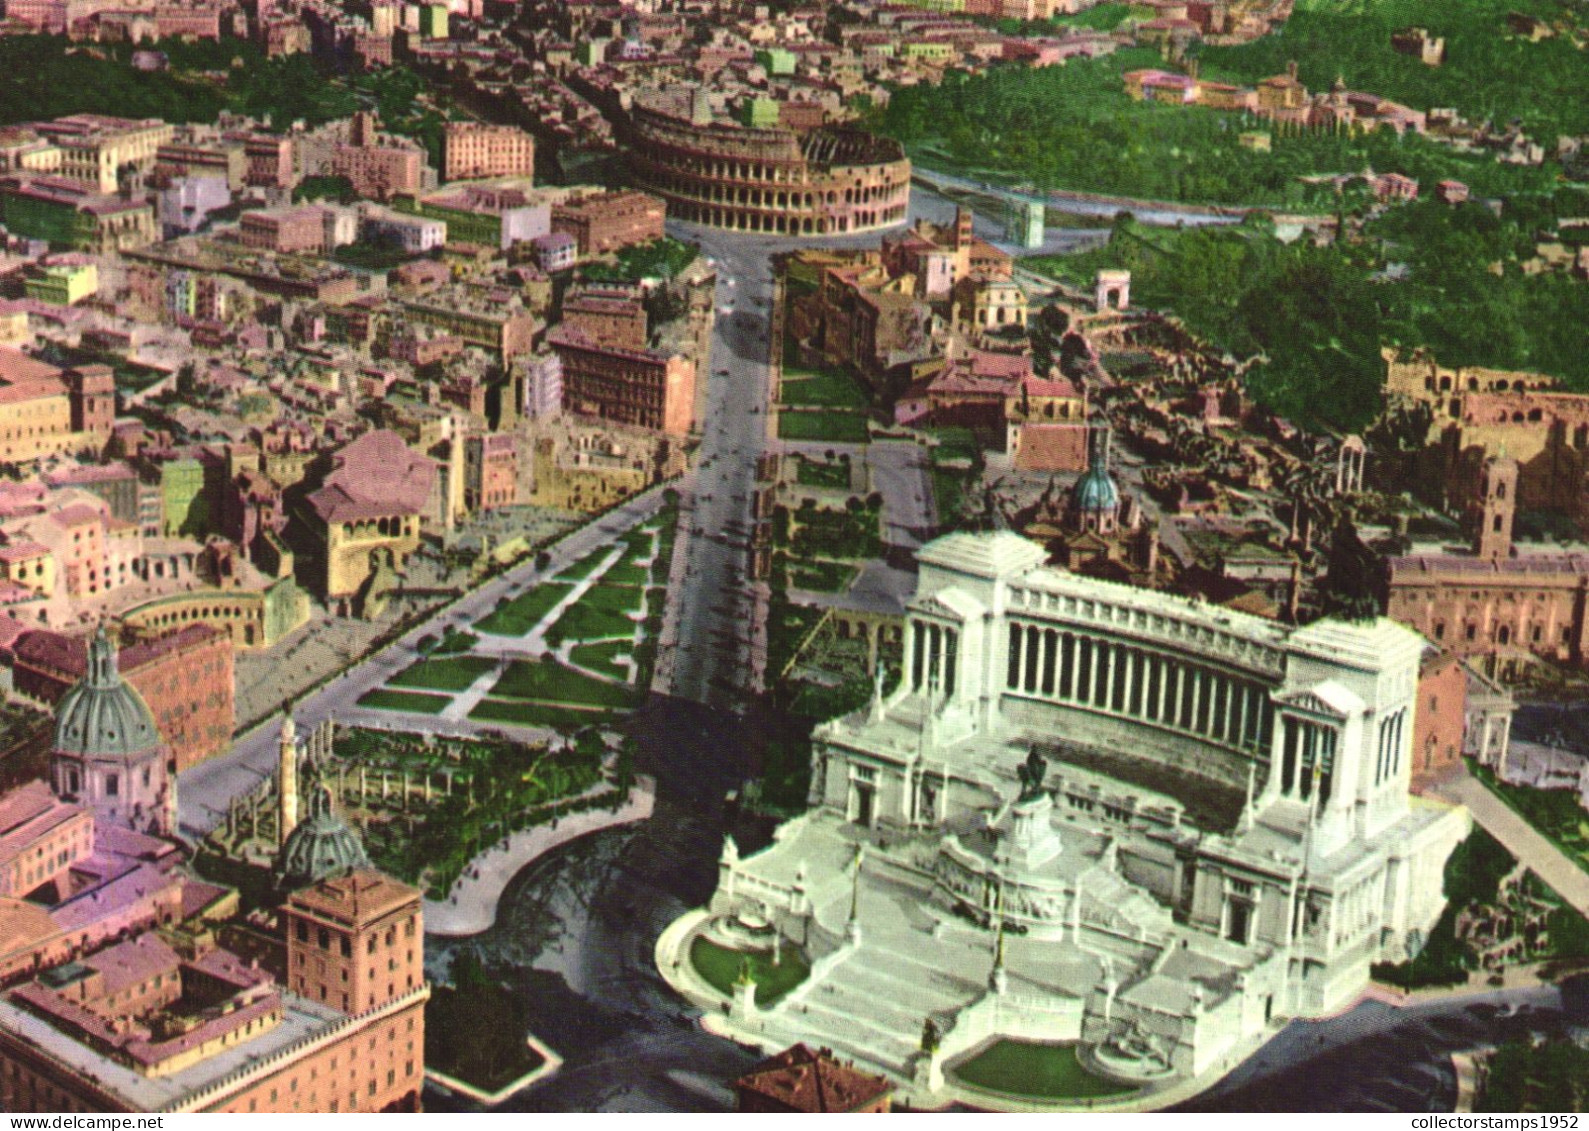 ROME, ALTAR OF THE NATION, STATUE, MONUMENT, CHURCH, COLOSSEUM,  ITALY - Altare Della Patria